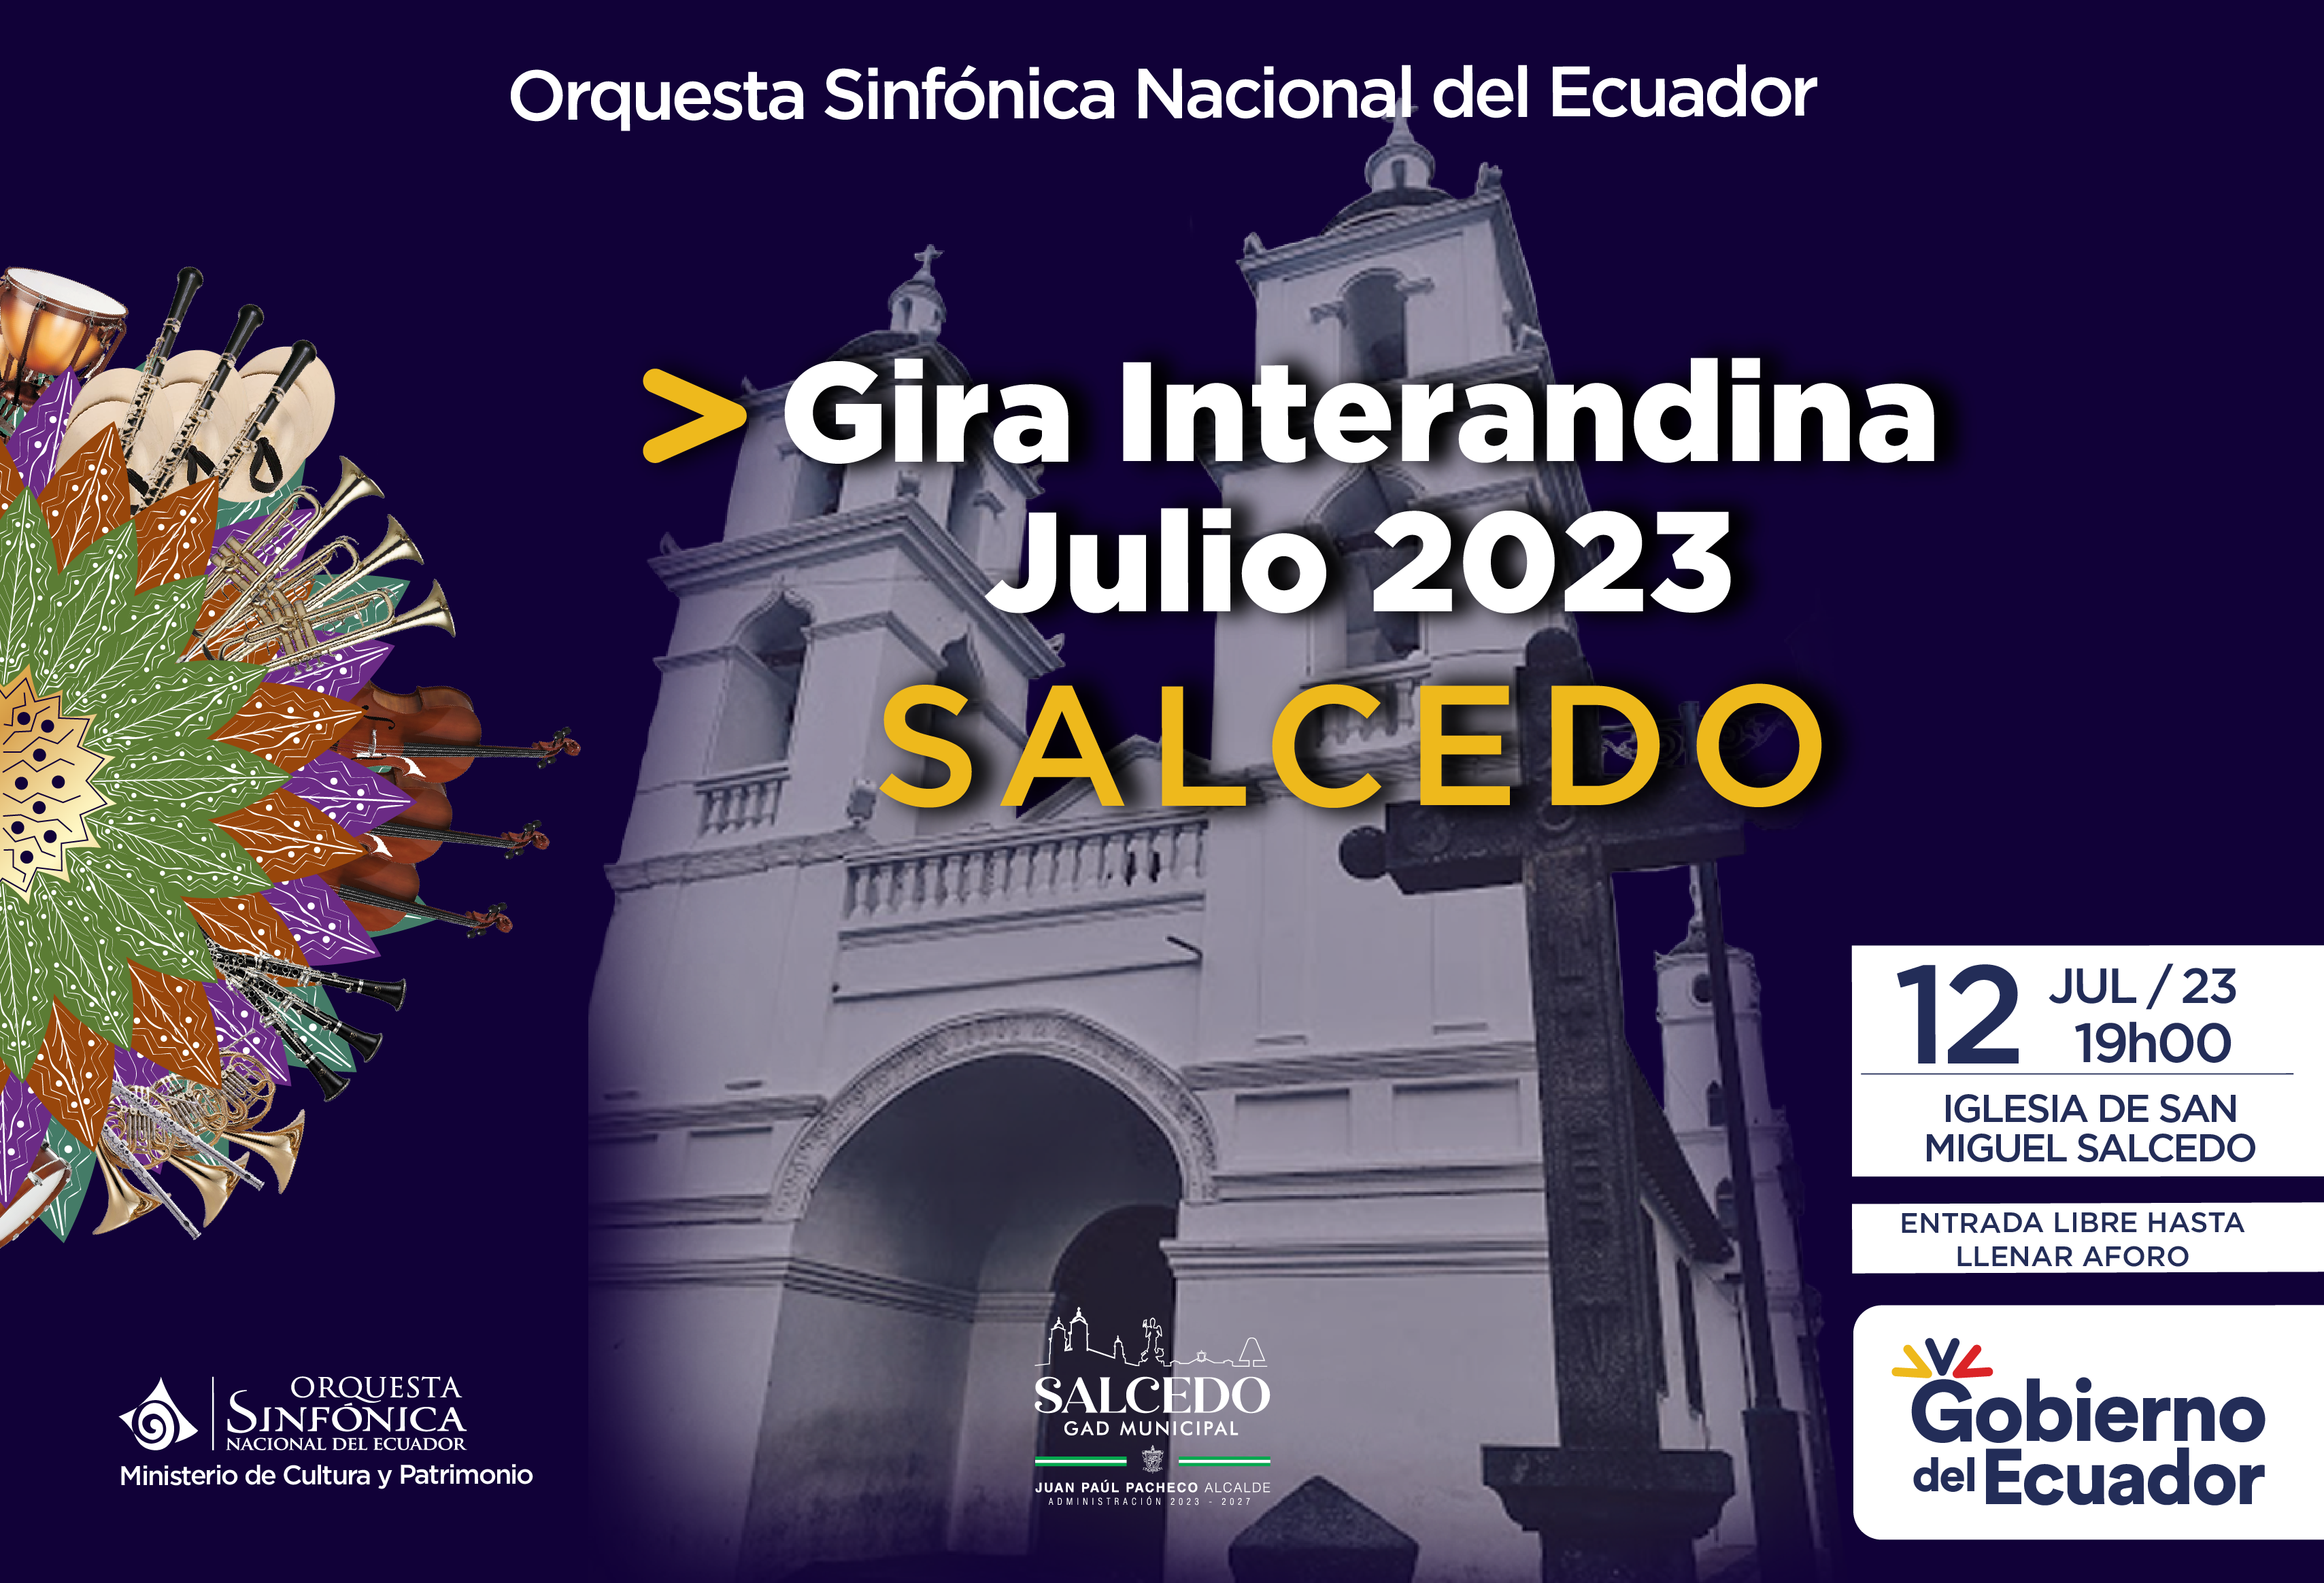 Gira Interandina Julio 2023 - Salcedo